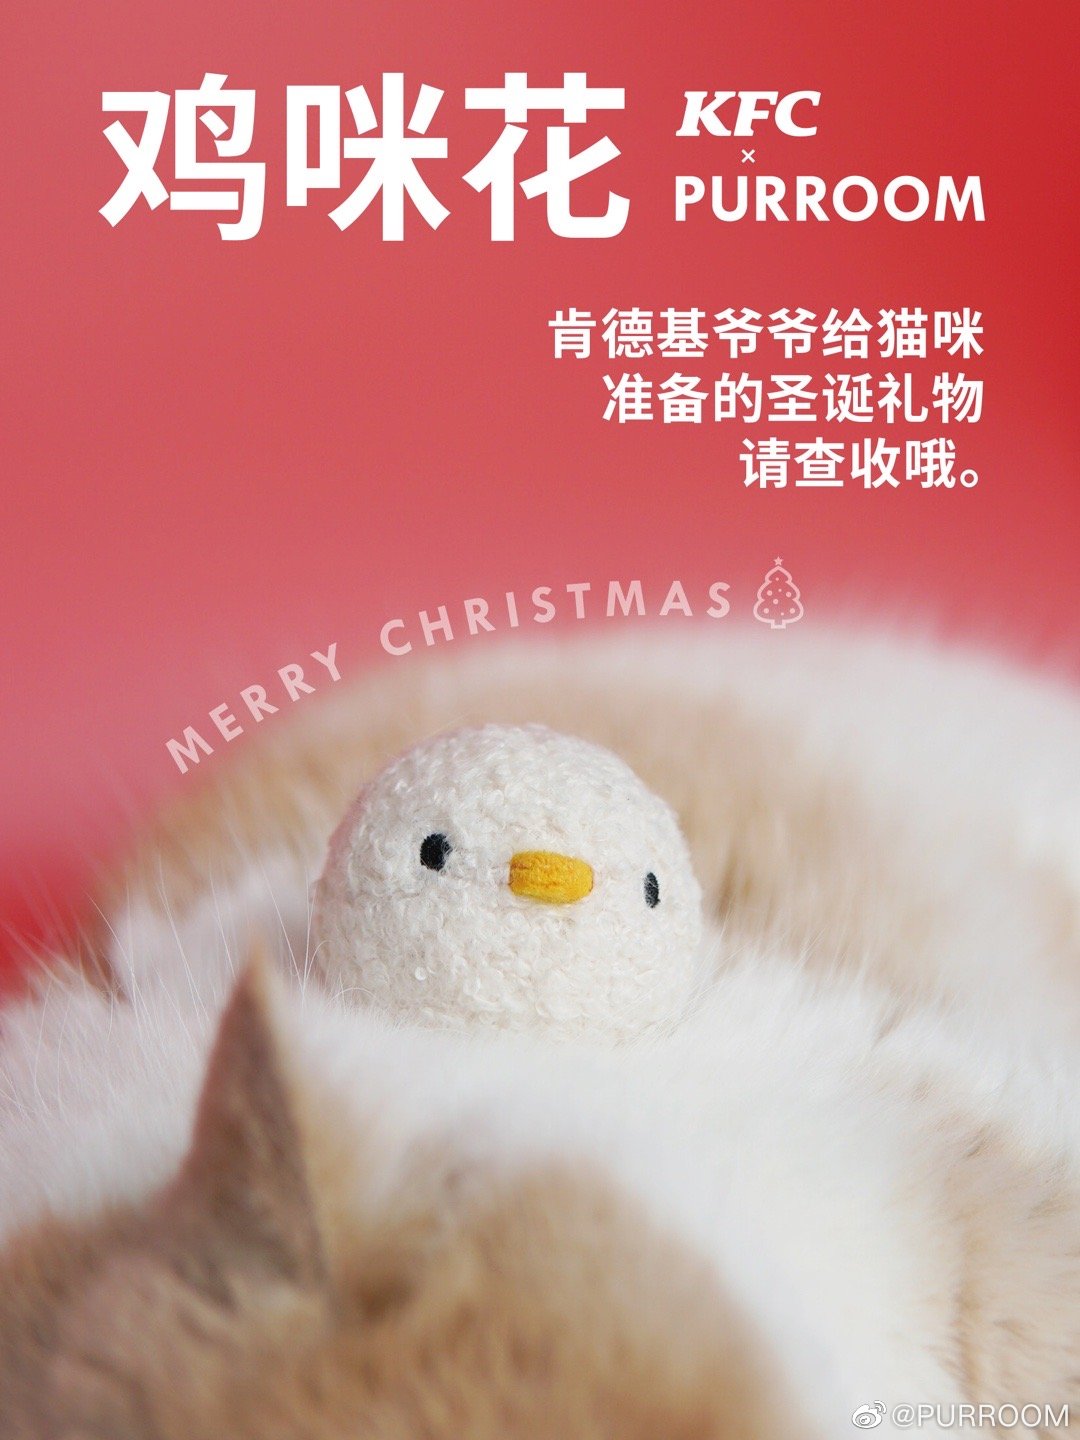 肯德基 × PURROOM 推出猫薄荷口味「鸡咪花」